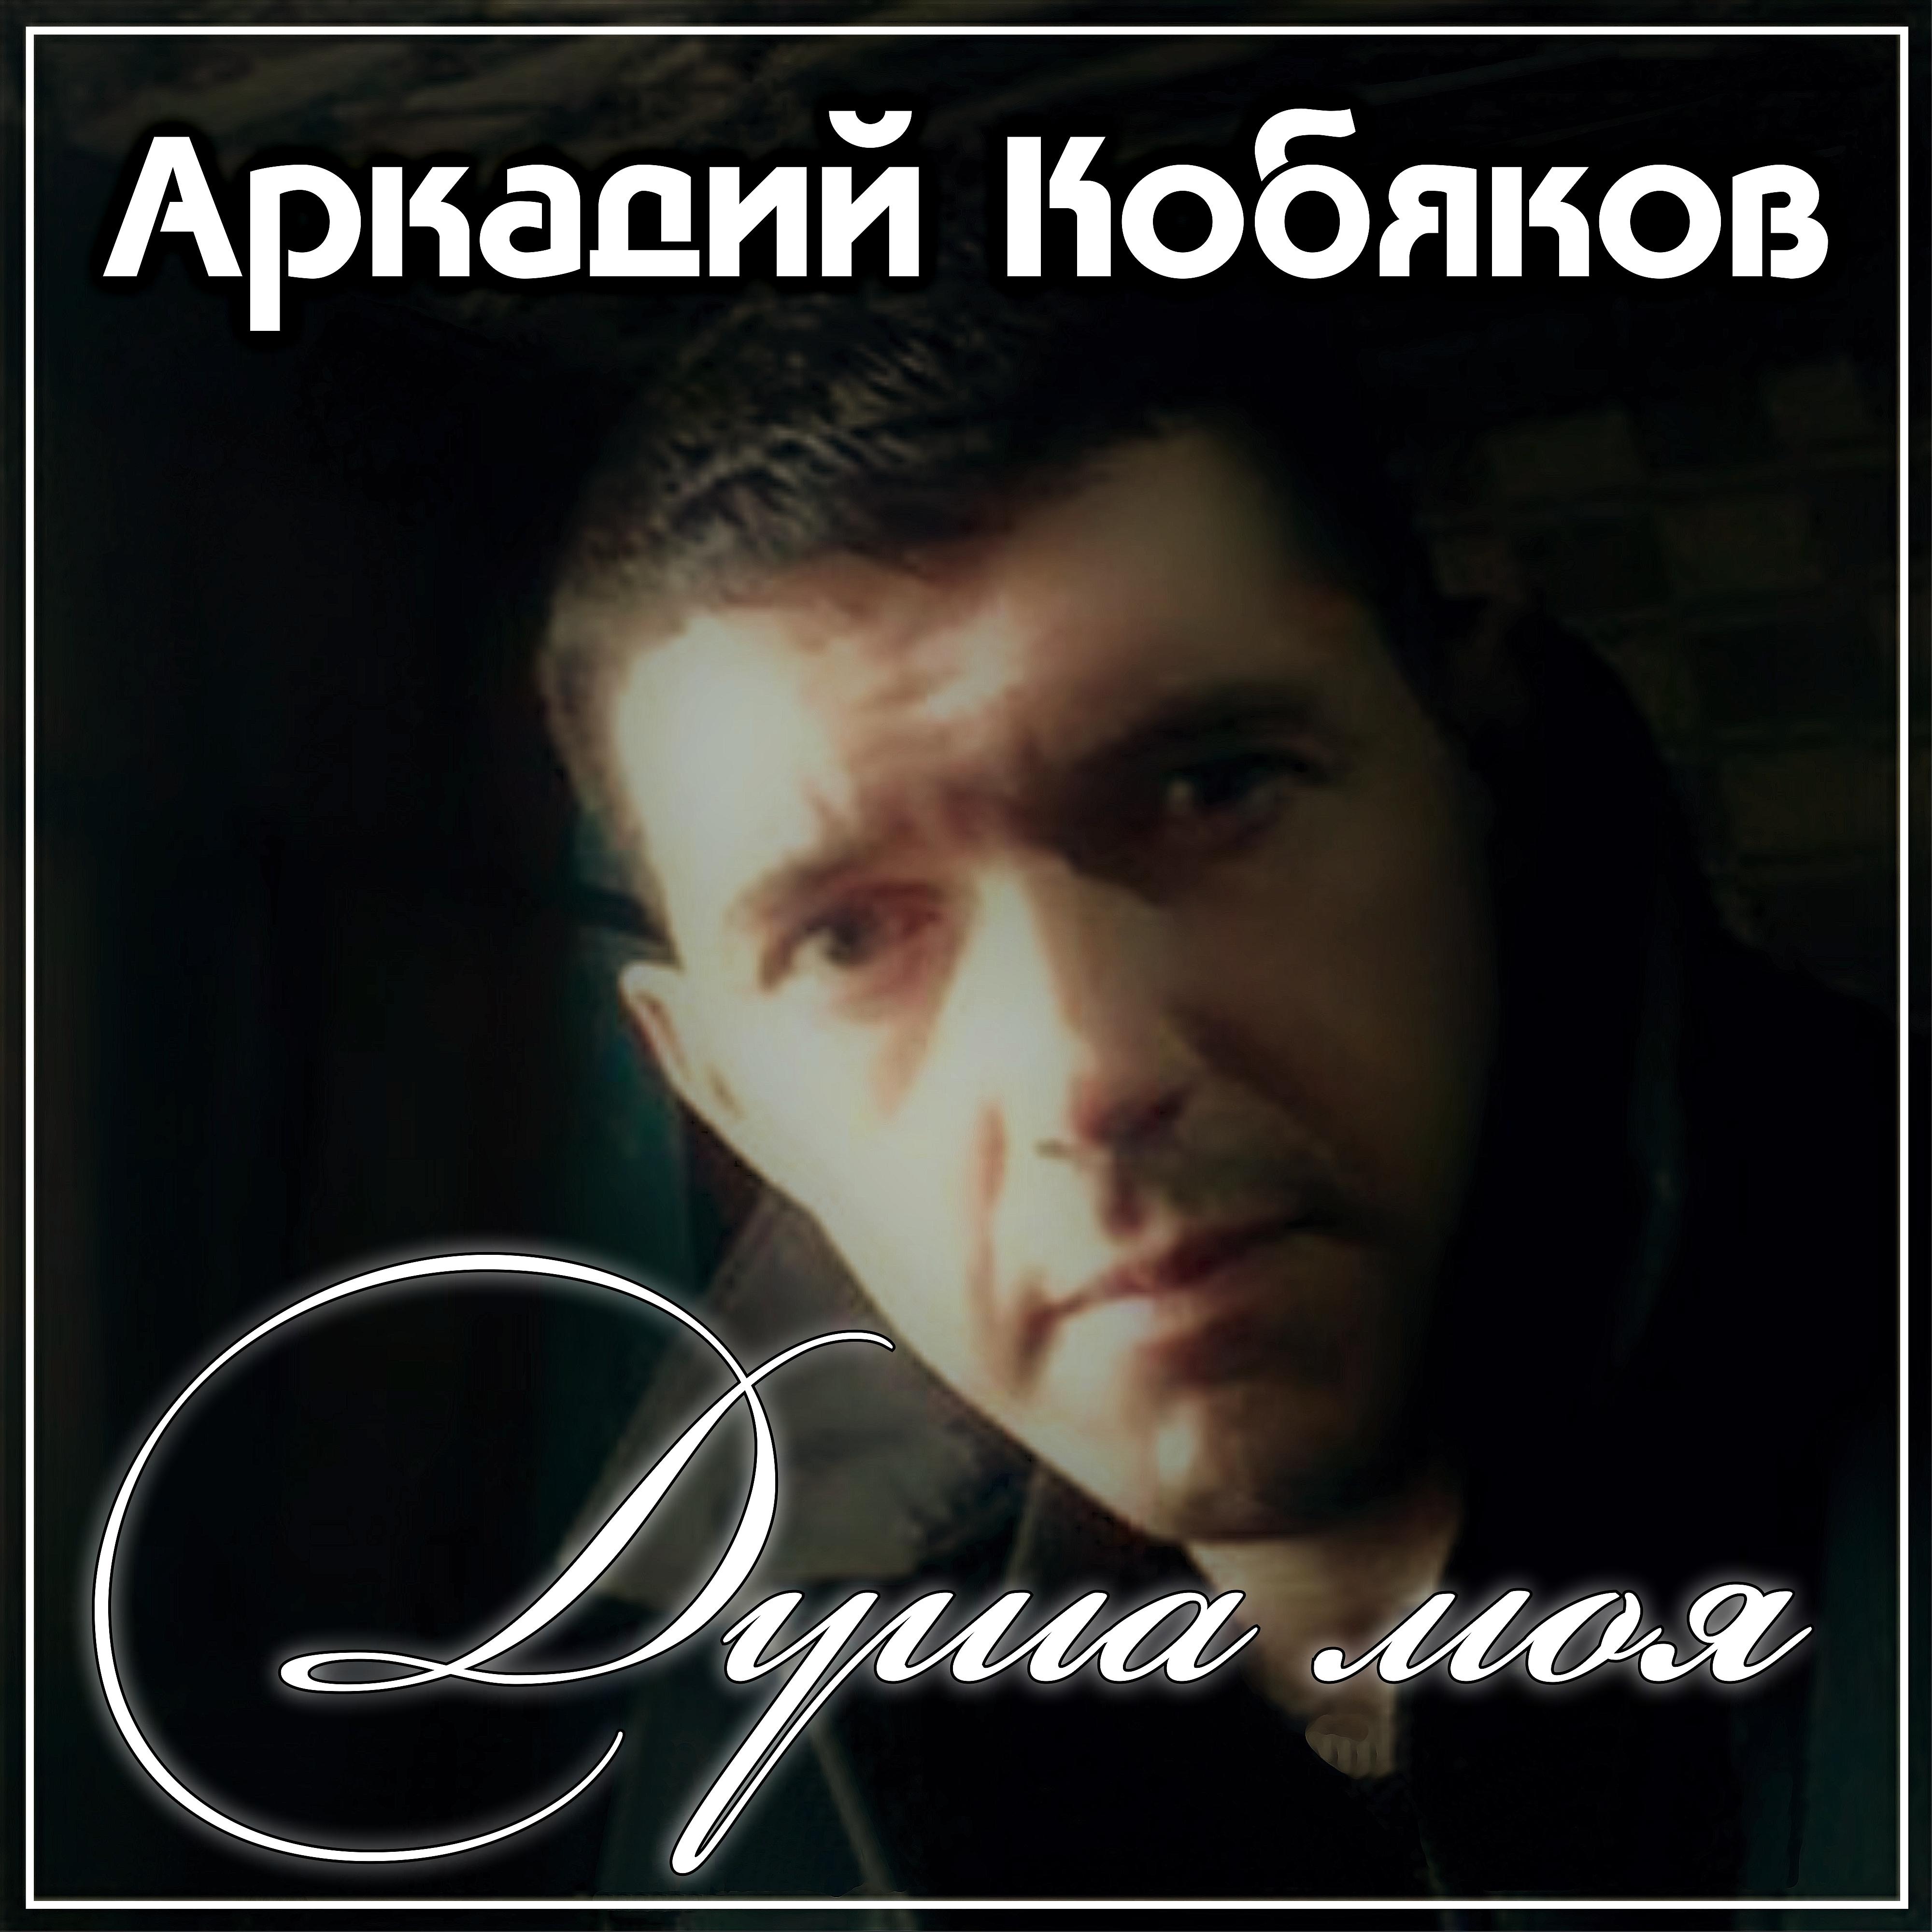 Кобяков песня моя душа. Кобяков в 2012.